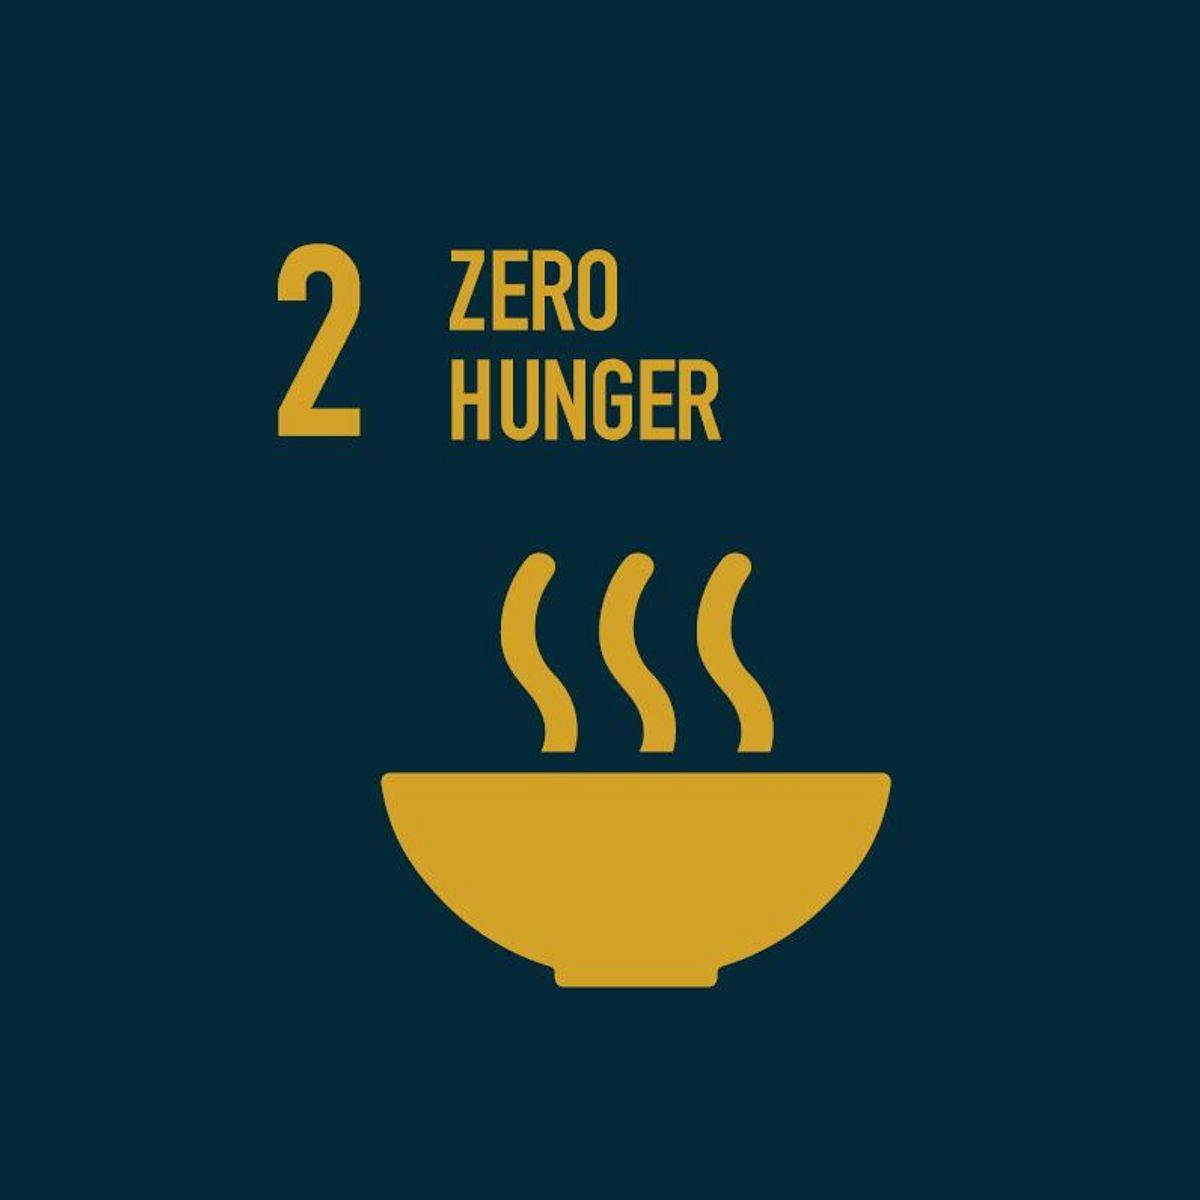 Zero hunger